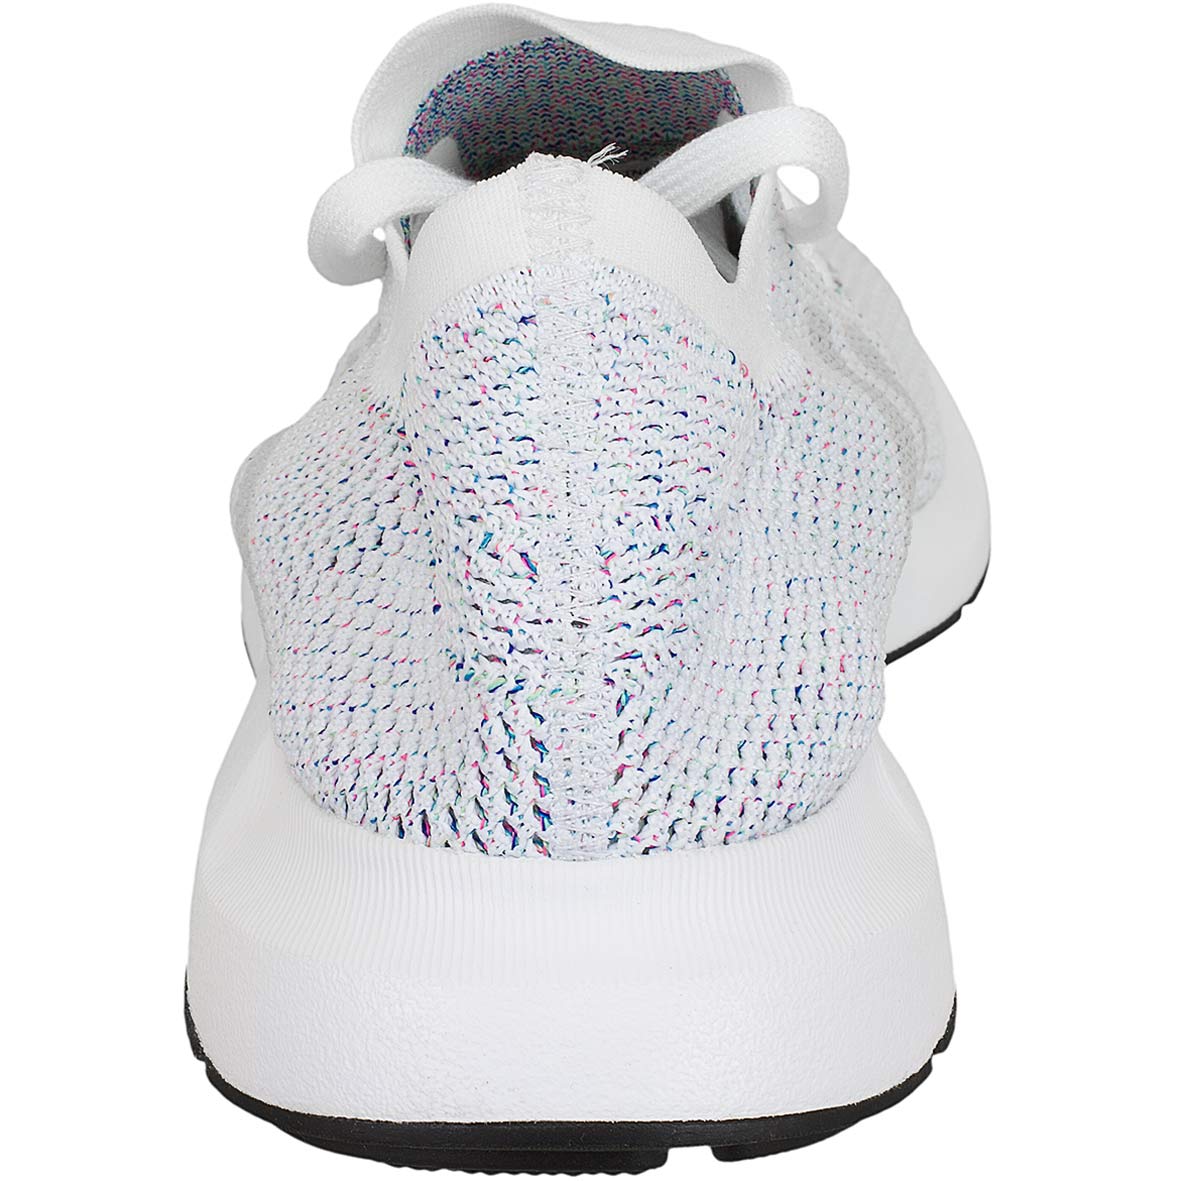 ☆ Adidas Originals Sneaker Swift Run Primeknit weiß/grey - hier bestellen!